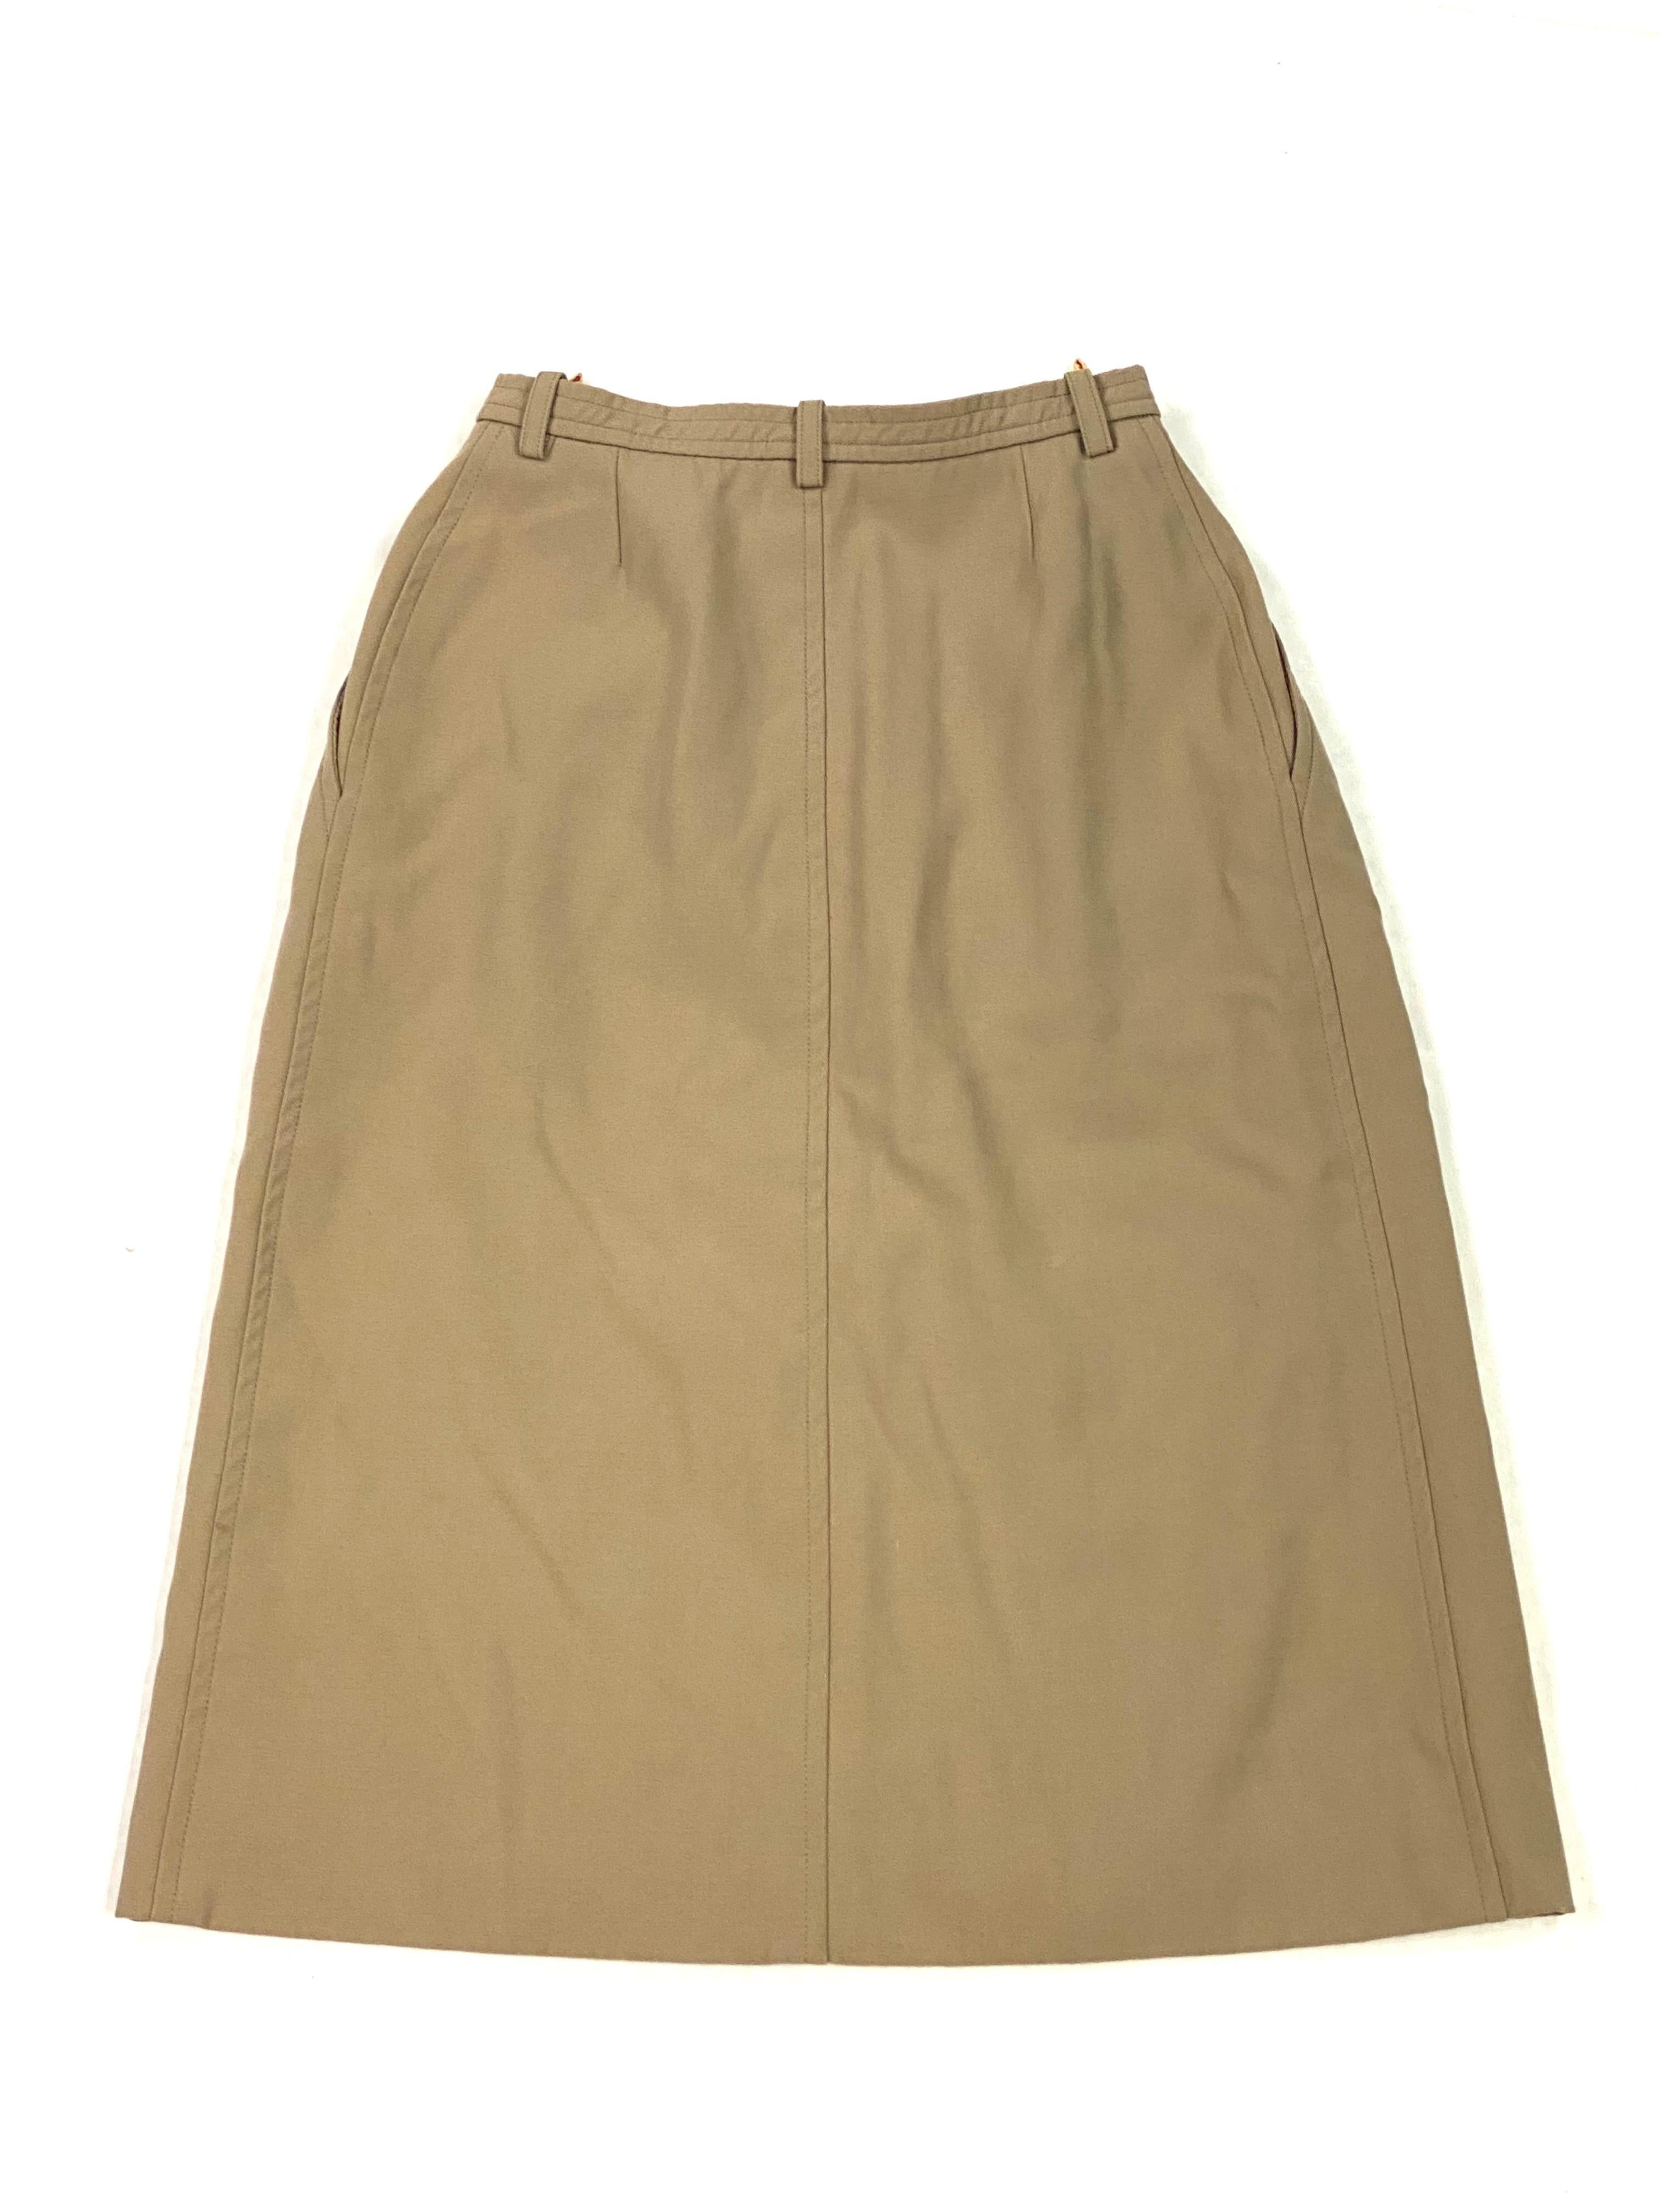 Yves Saint Laurent Rive Gauche Paris Brown Skirt, Size 36 For Sale 5